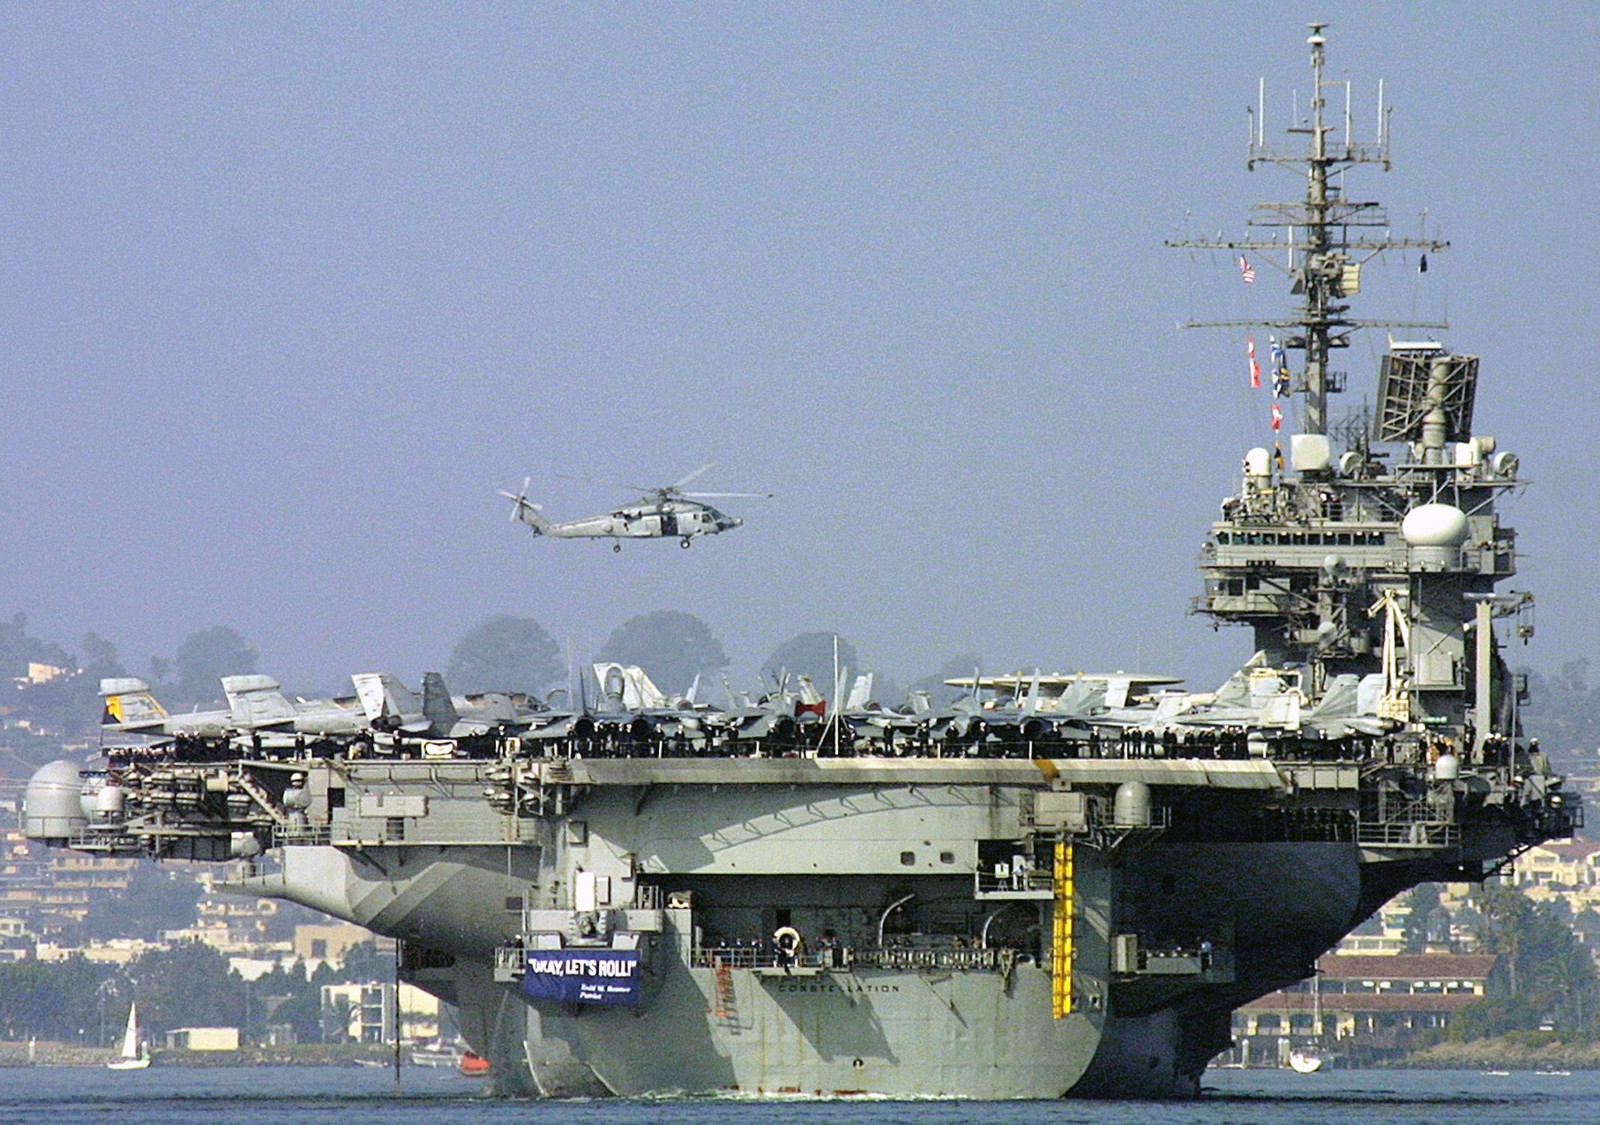 cv-64 uss constellation kitty hawk class aircraft carrier air wing cvw-2 us navy 08